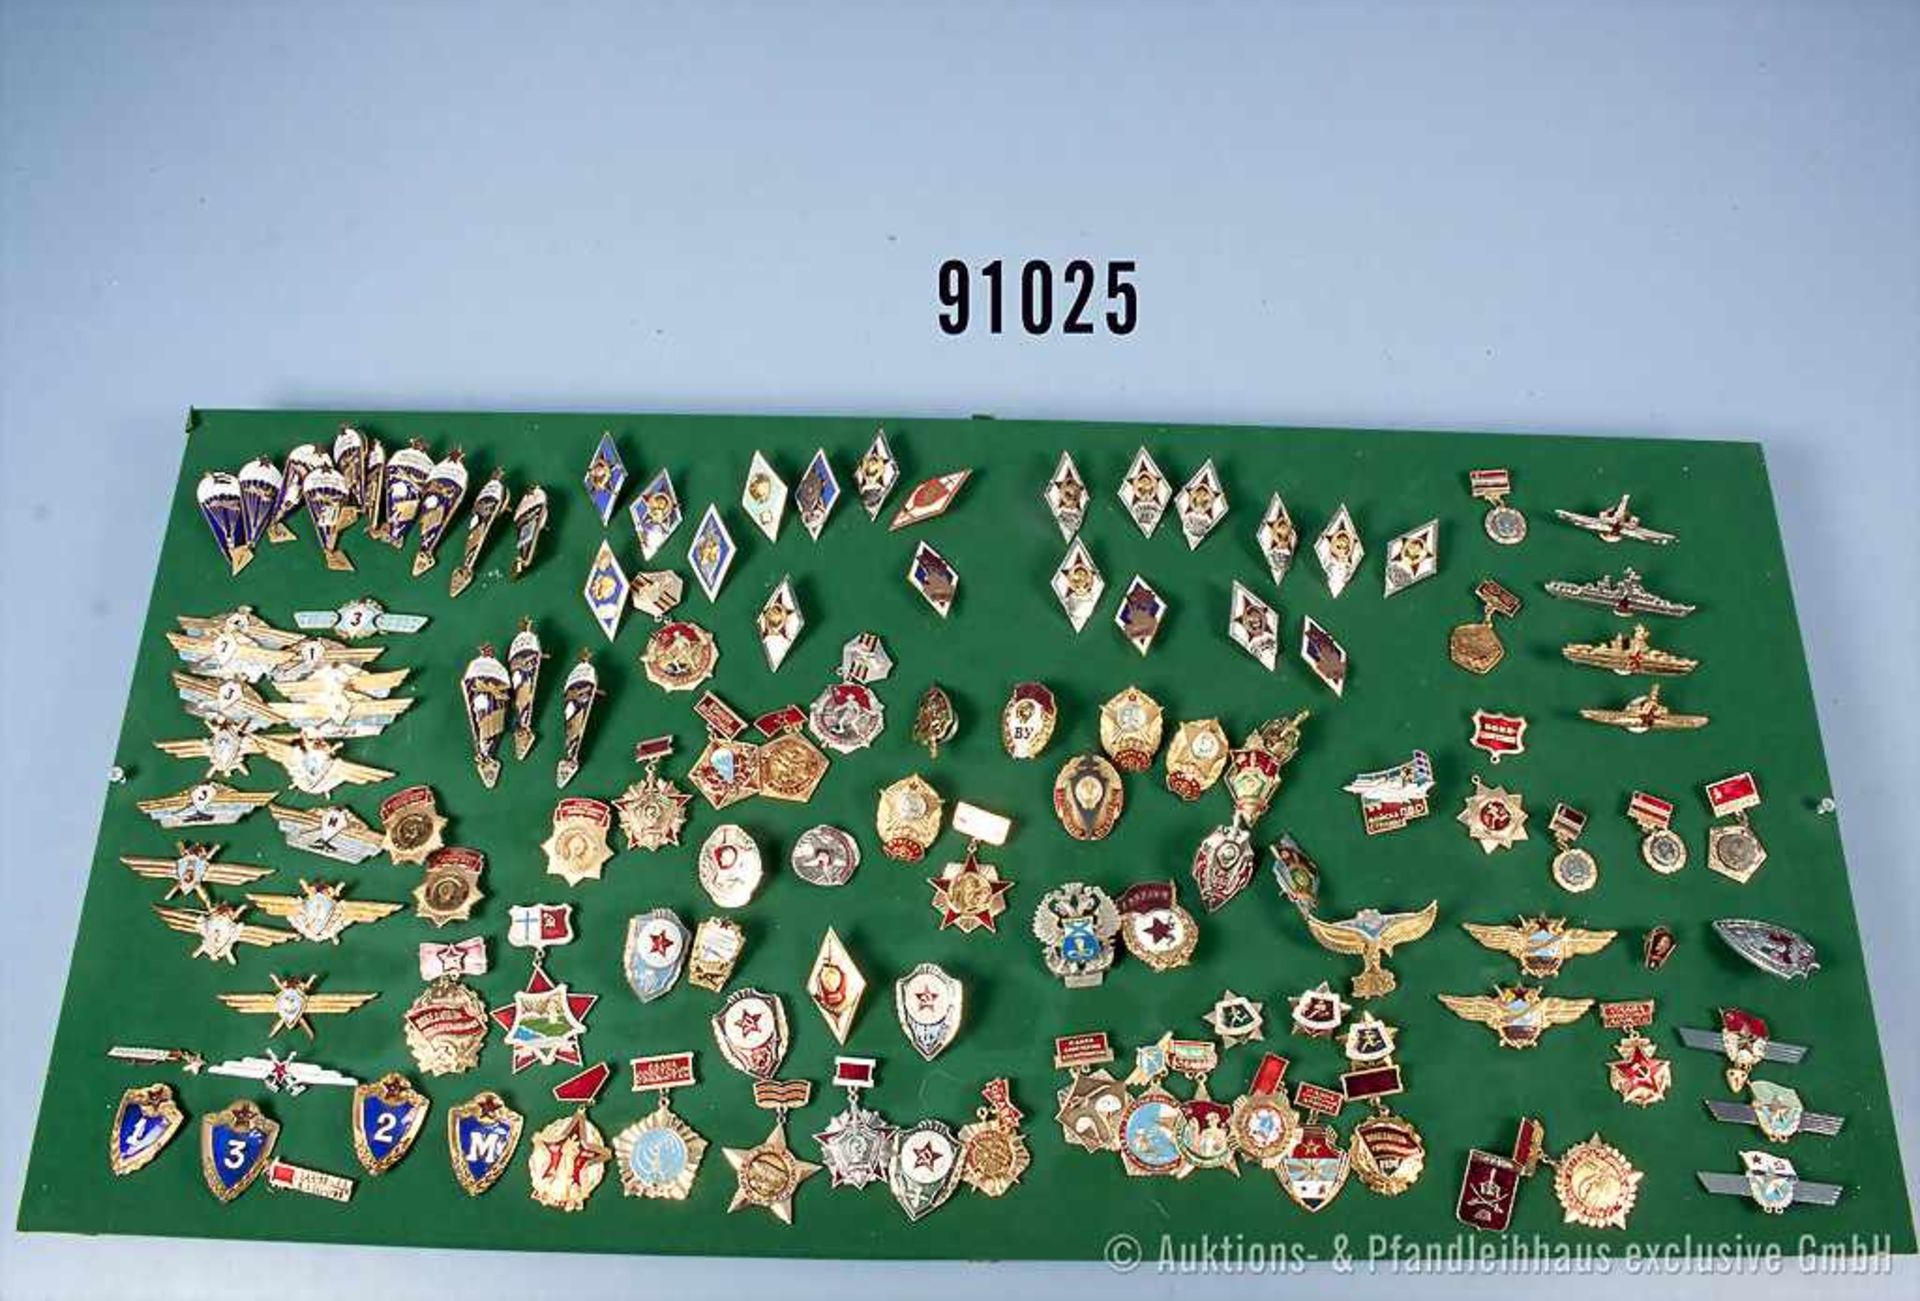 Konv. UdSSR, ca. 225 Solventenabzeichen militärischer Lehranstalten, Fallschirmspringer-Abzeichen, - Bild 2 aus 2